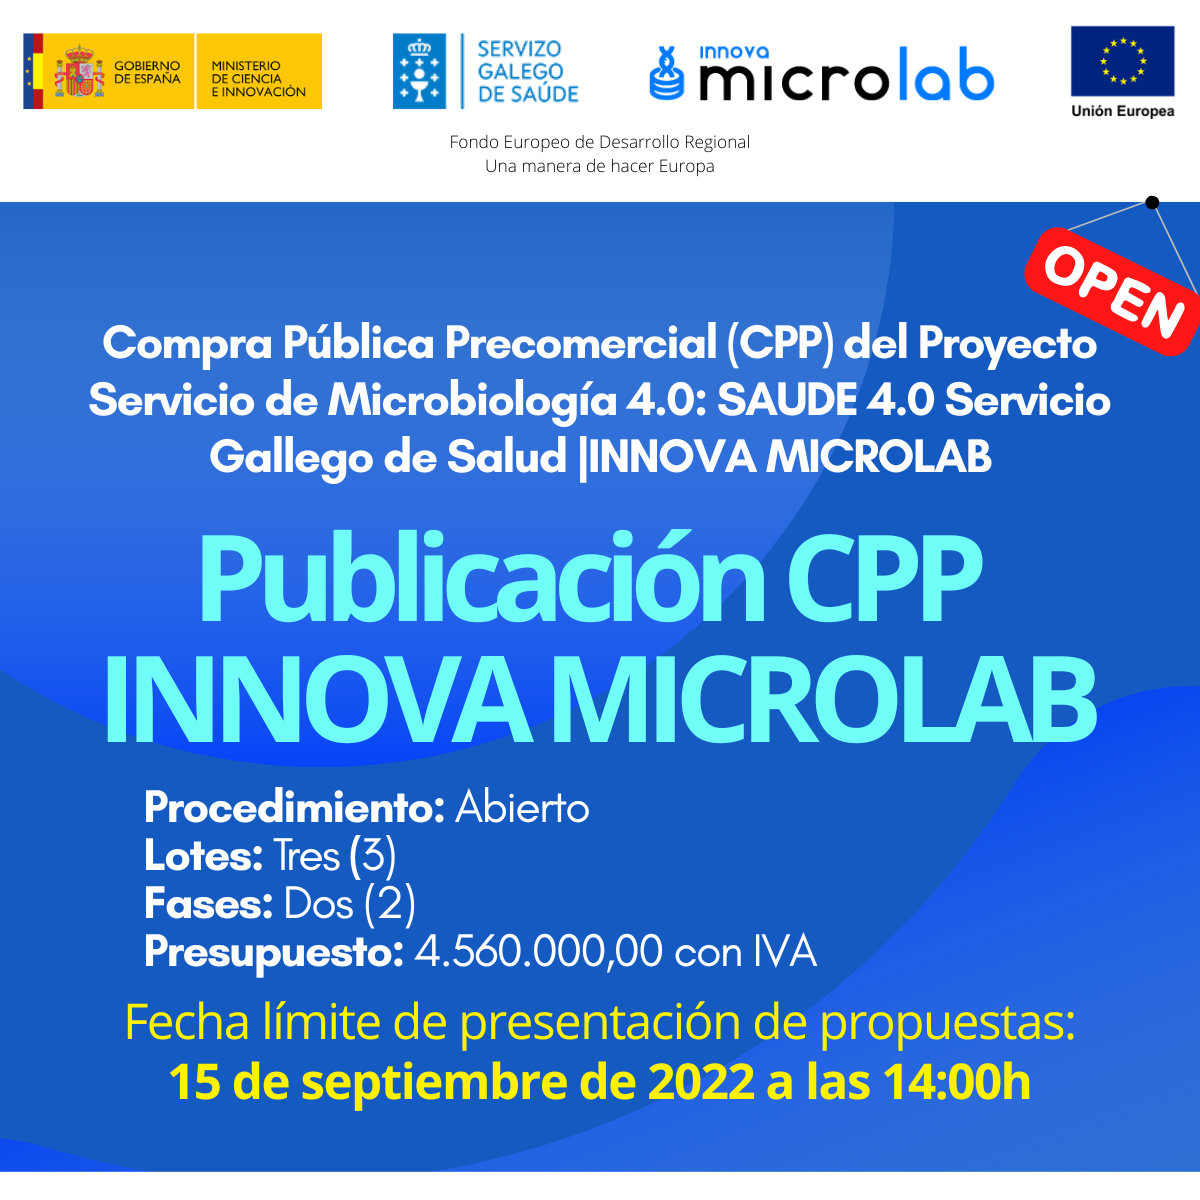 Participa en la licitación de la Compra Pública Precomercial del proyecto Innova MicroLab